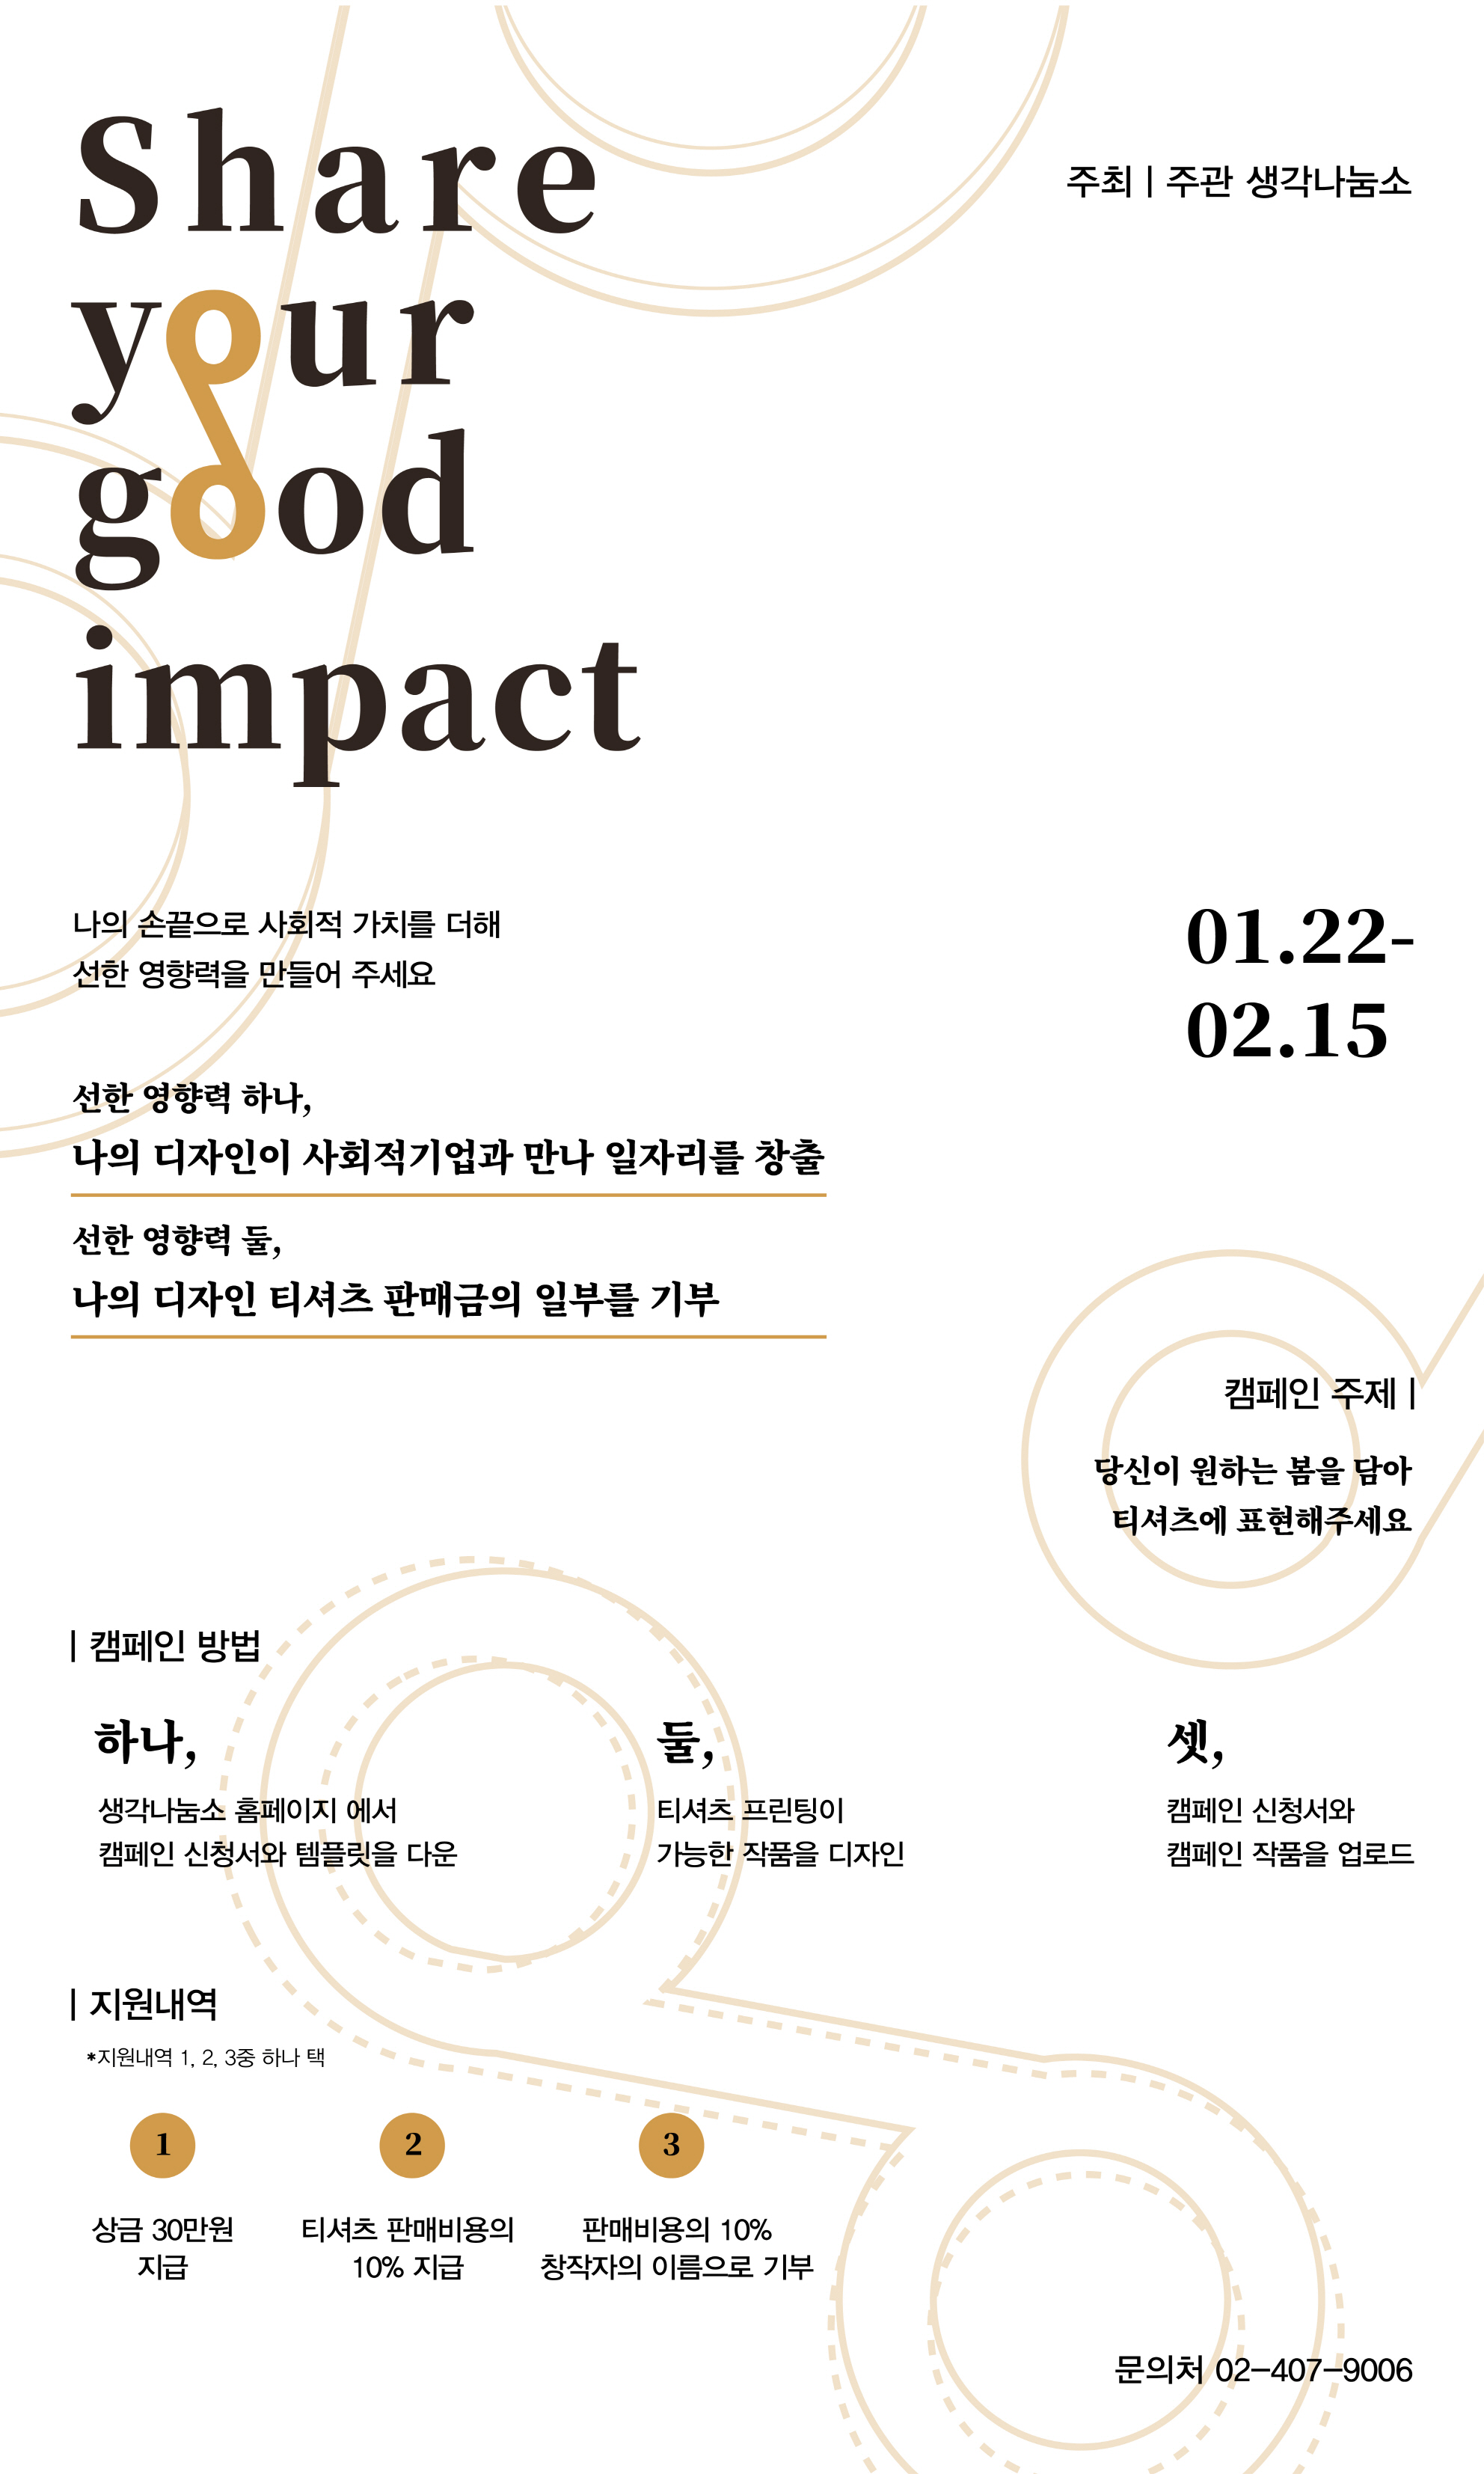 크기변환_Share your good impact 캠페인 공모전 포스터.jpg